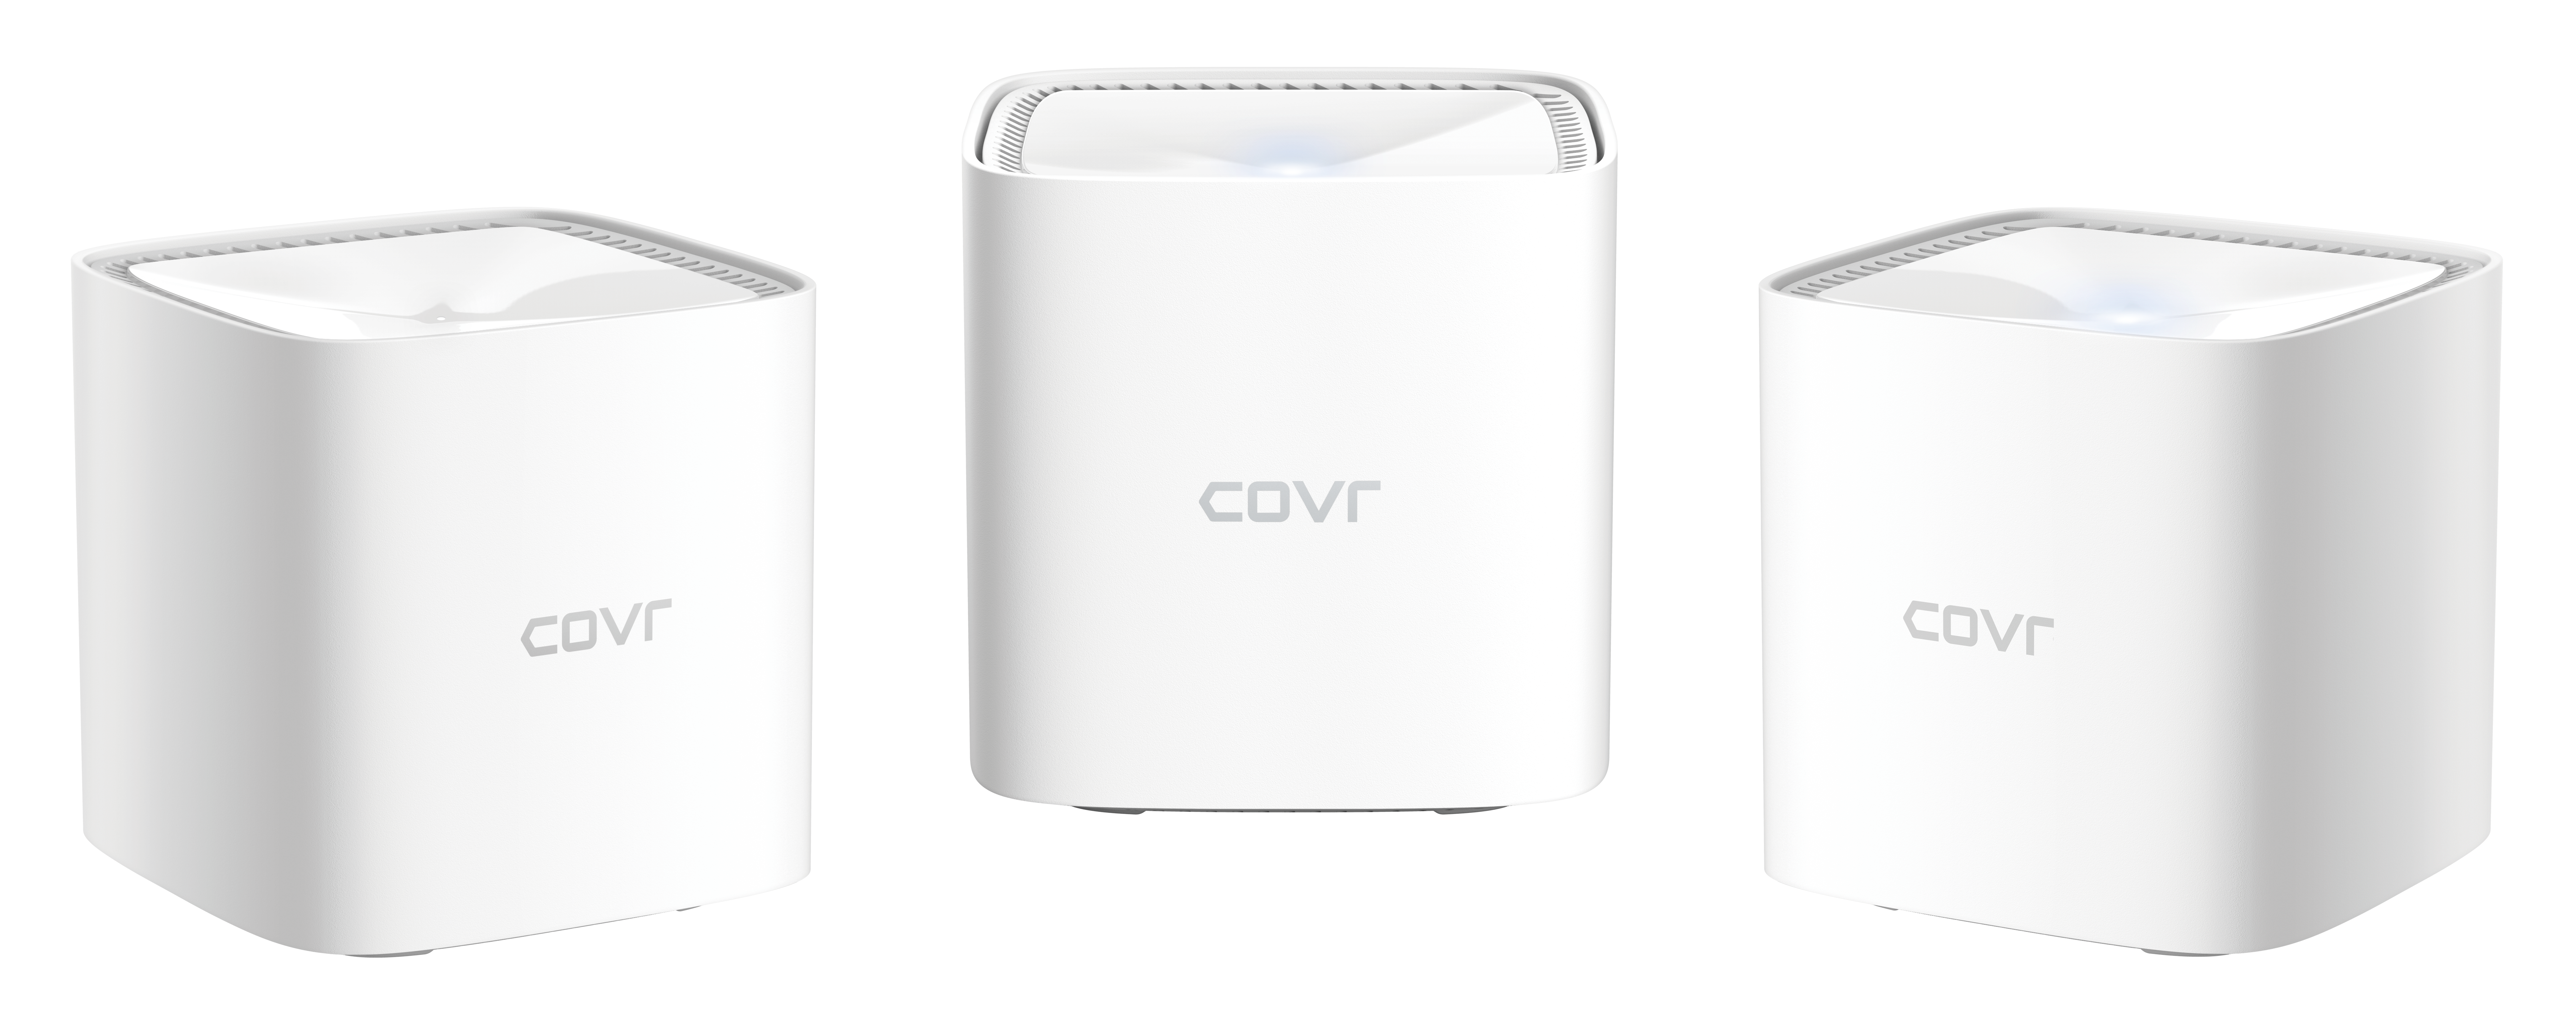 D-Link COVR-1103 WiFi Mesh Kit